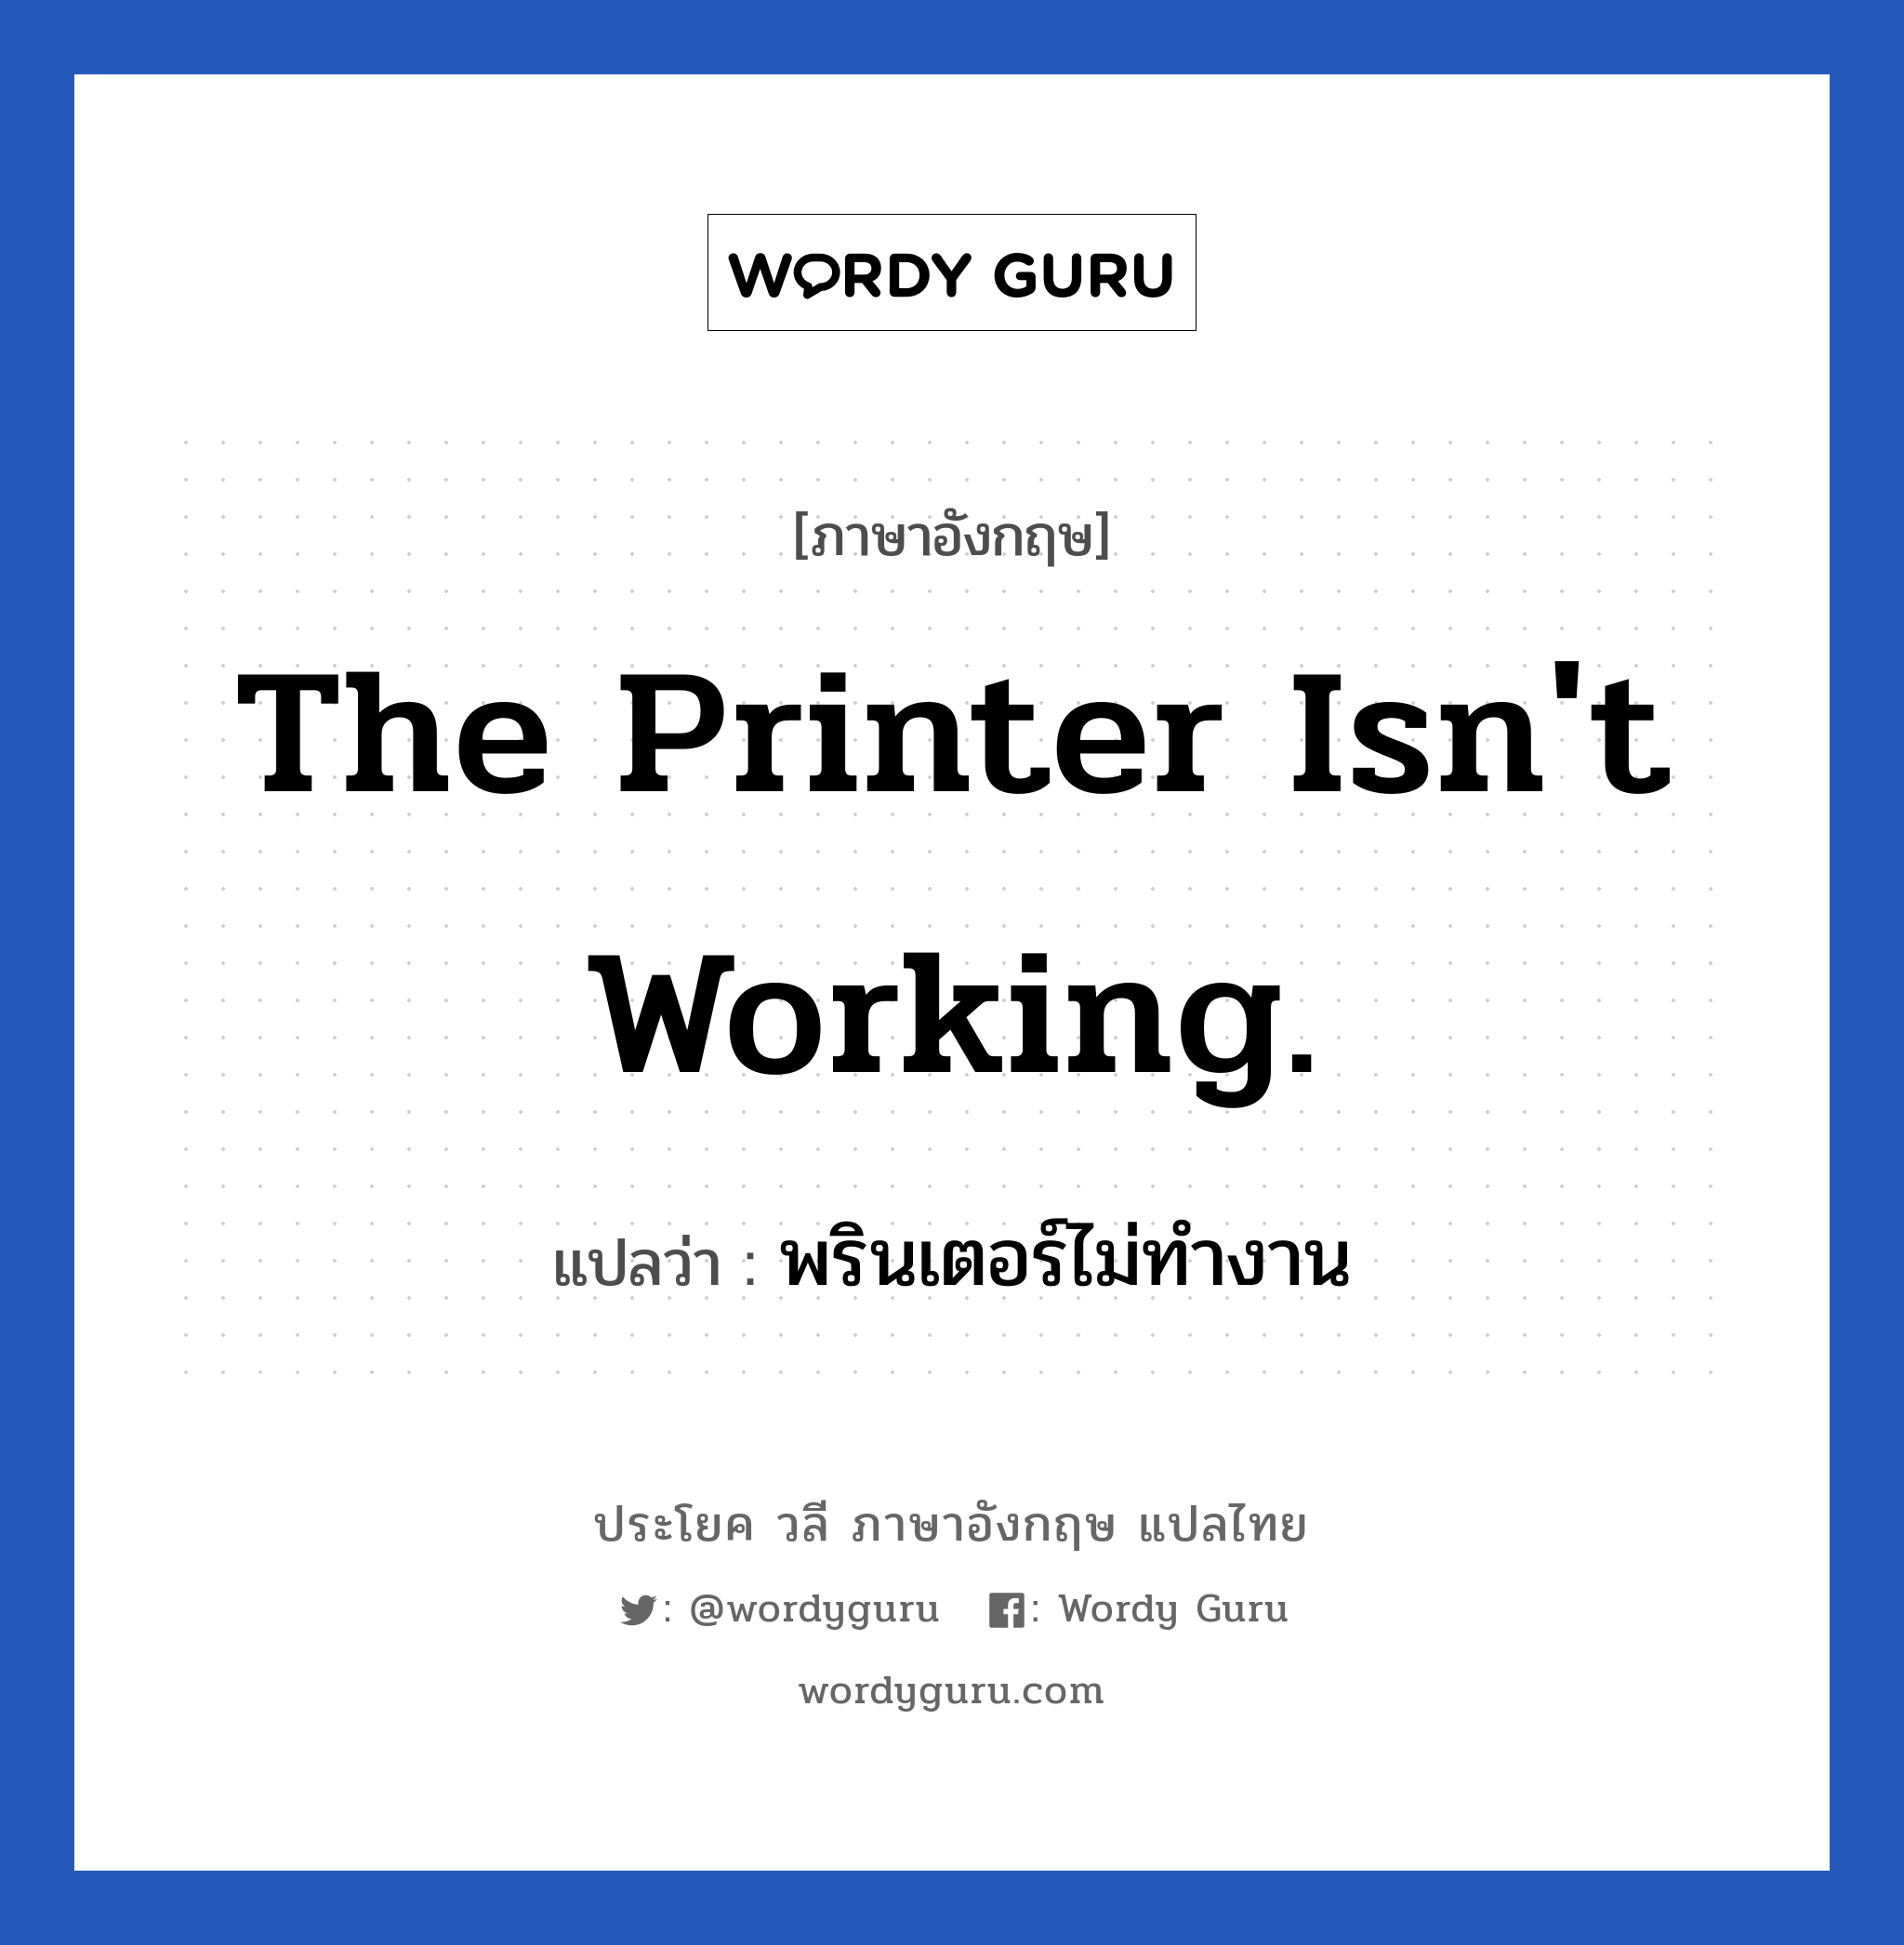 The printer isn't working. แปลว่า?, วลีภาษาอังกฤษ The printer isn't working. แปลว่า พรินเตอร์ไม่ทำงาน